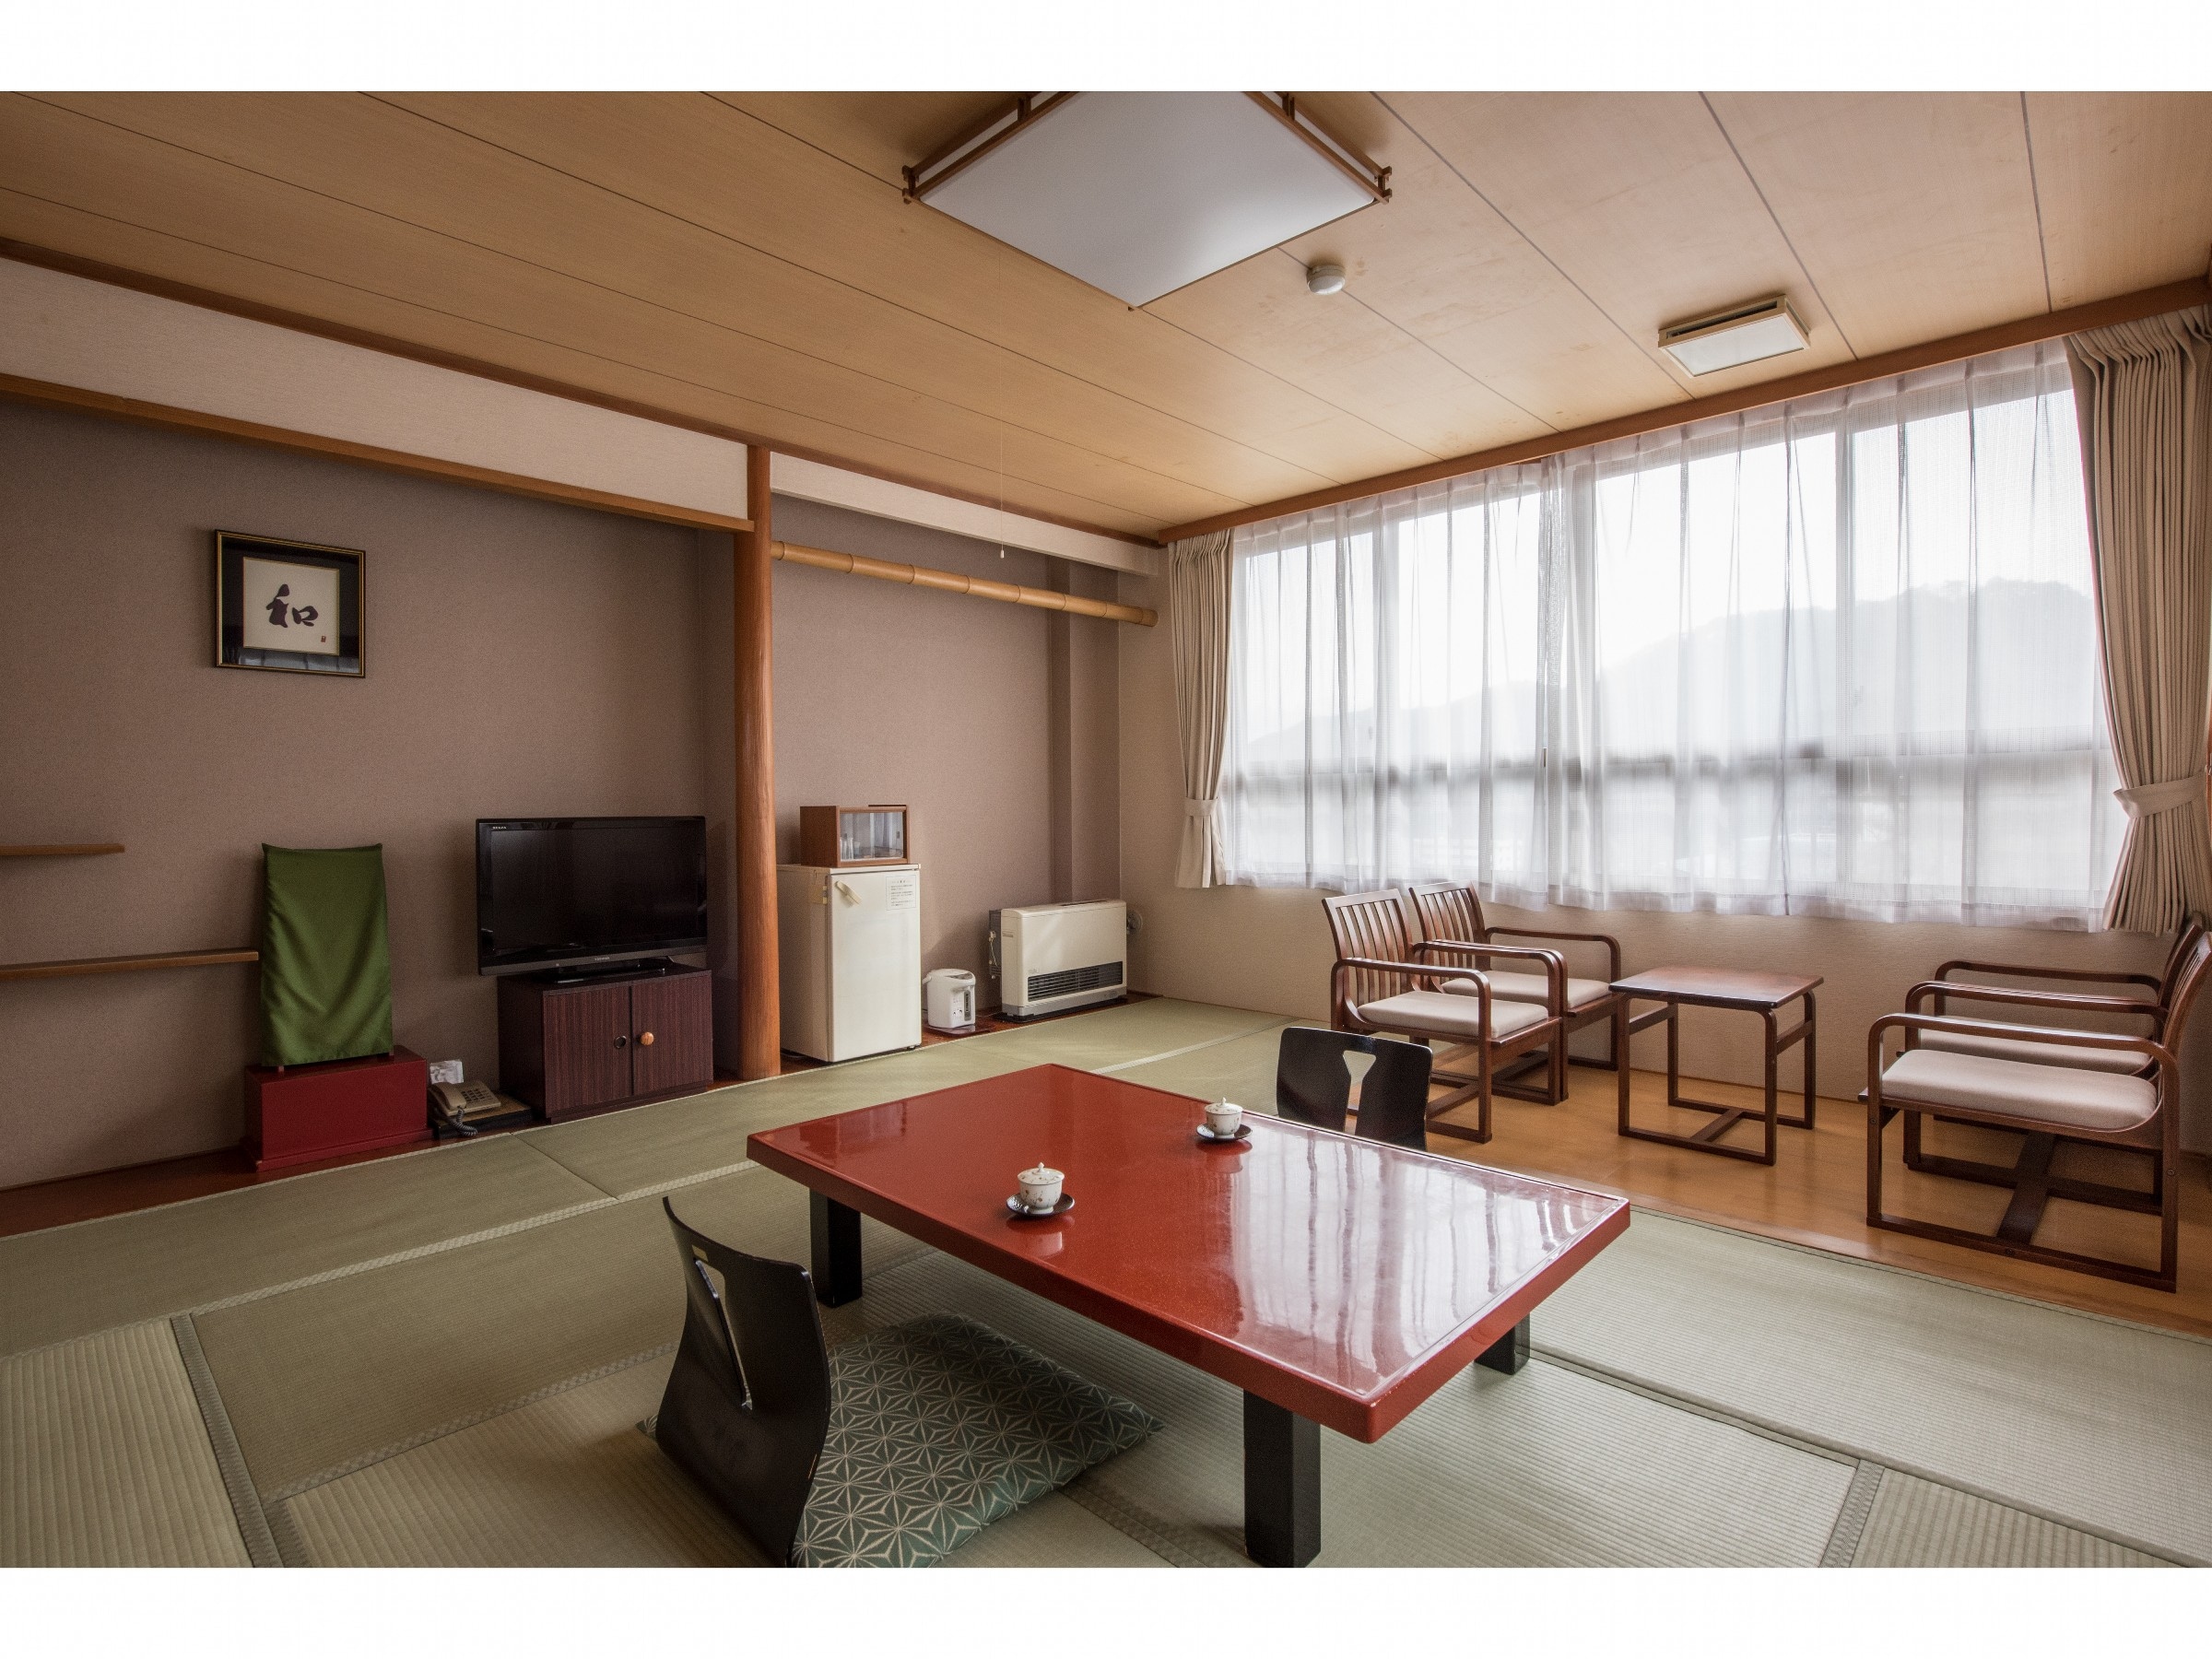 ห้องสไตล์ญี่ปุ่น 12 เสื่อทาทามิ (มีห้องน้ำ)